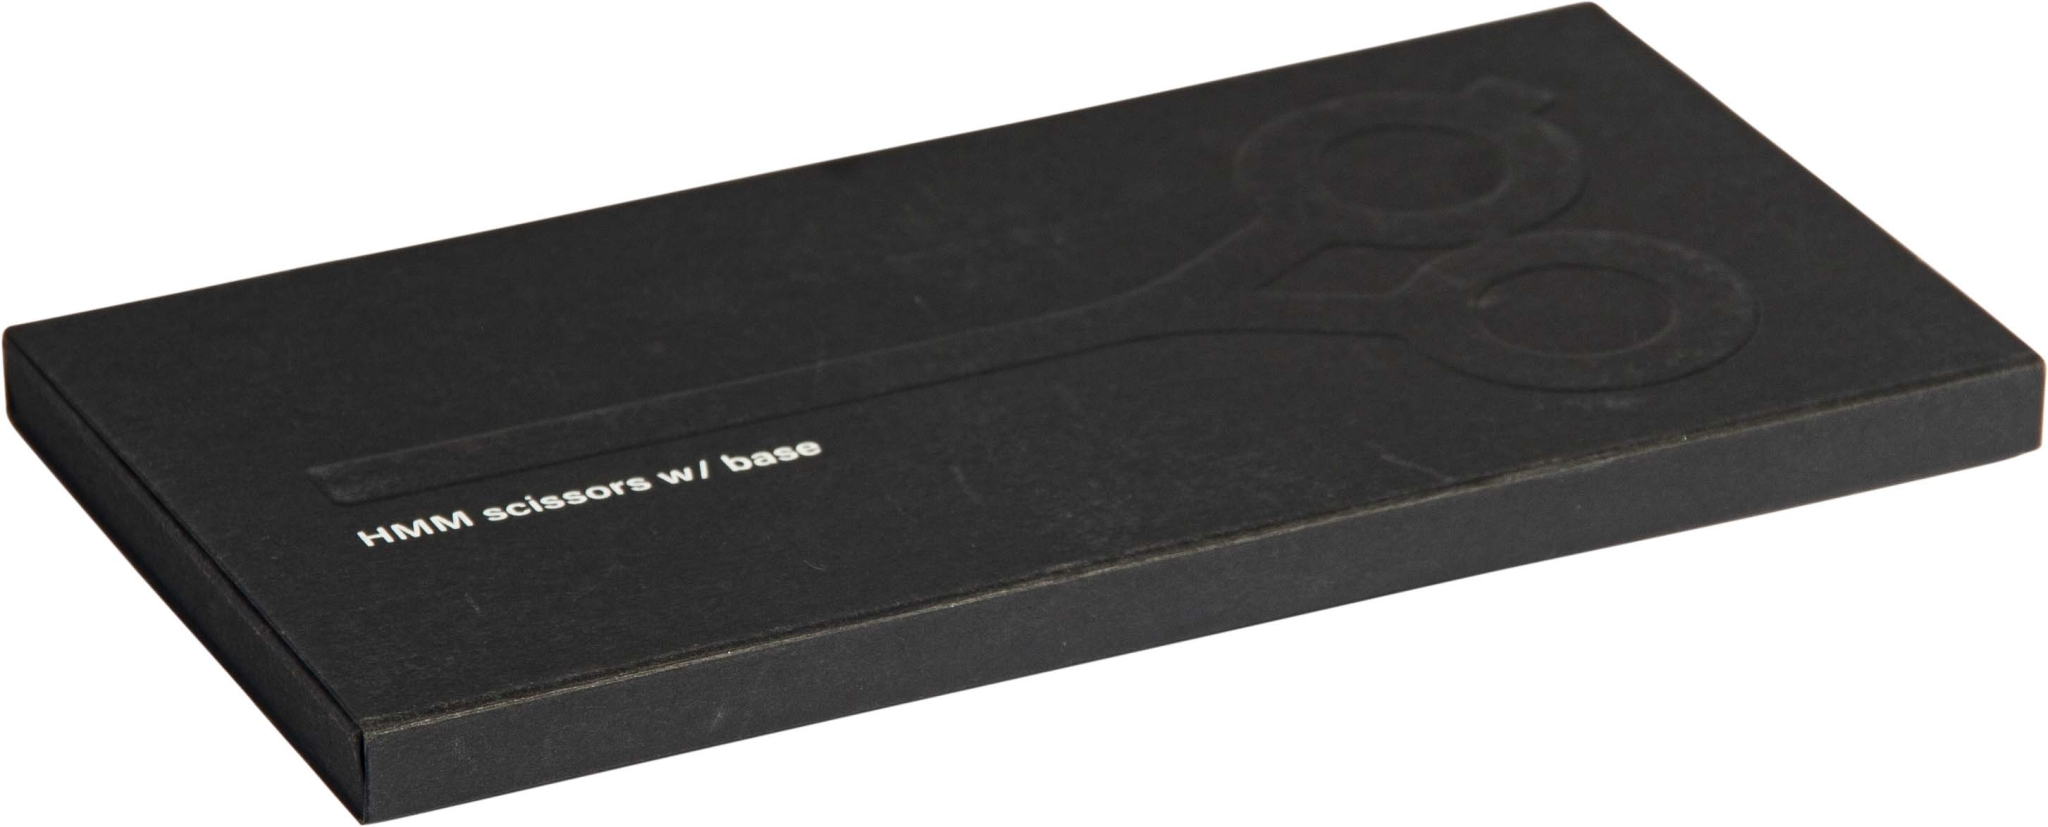 Настольные ножницы на магнитной подставке SCISSORS BLACK черные, #000000, японская нержавеющая сталь